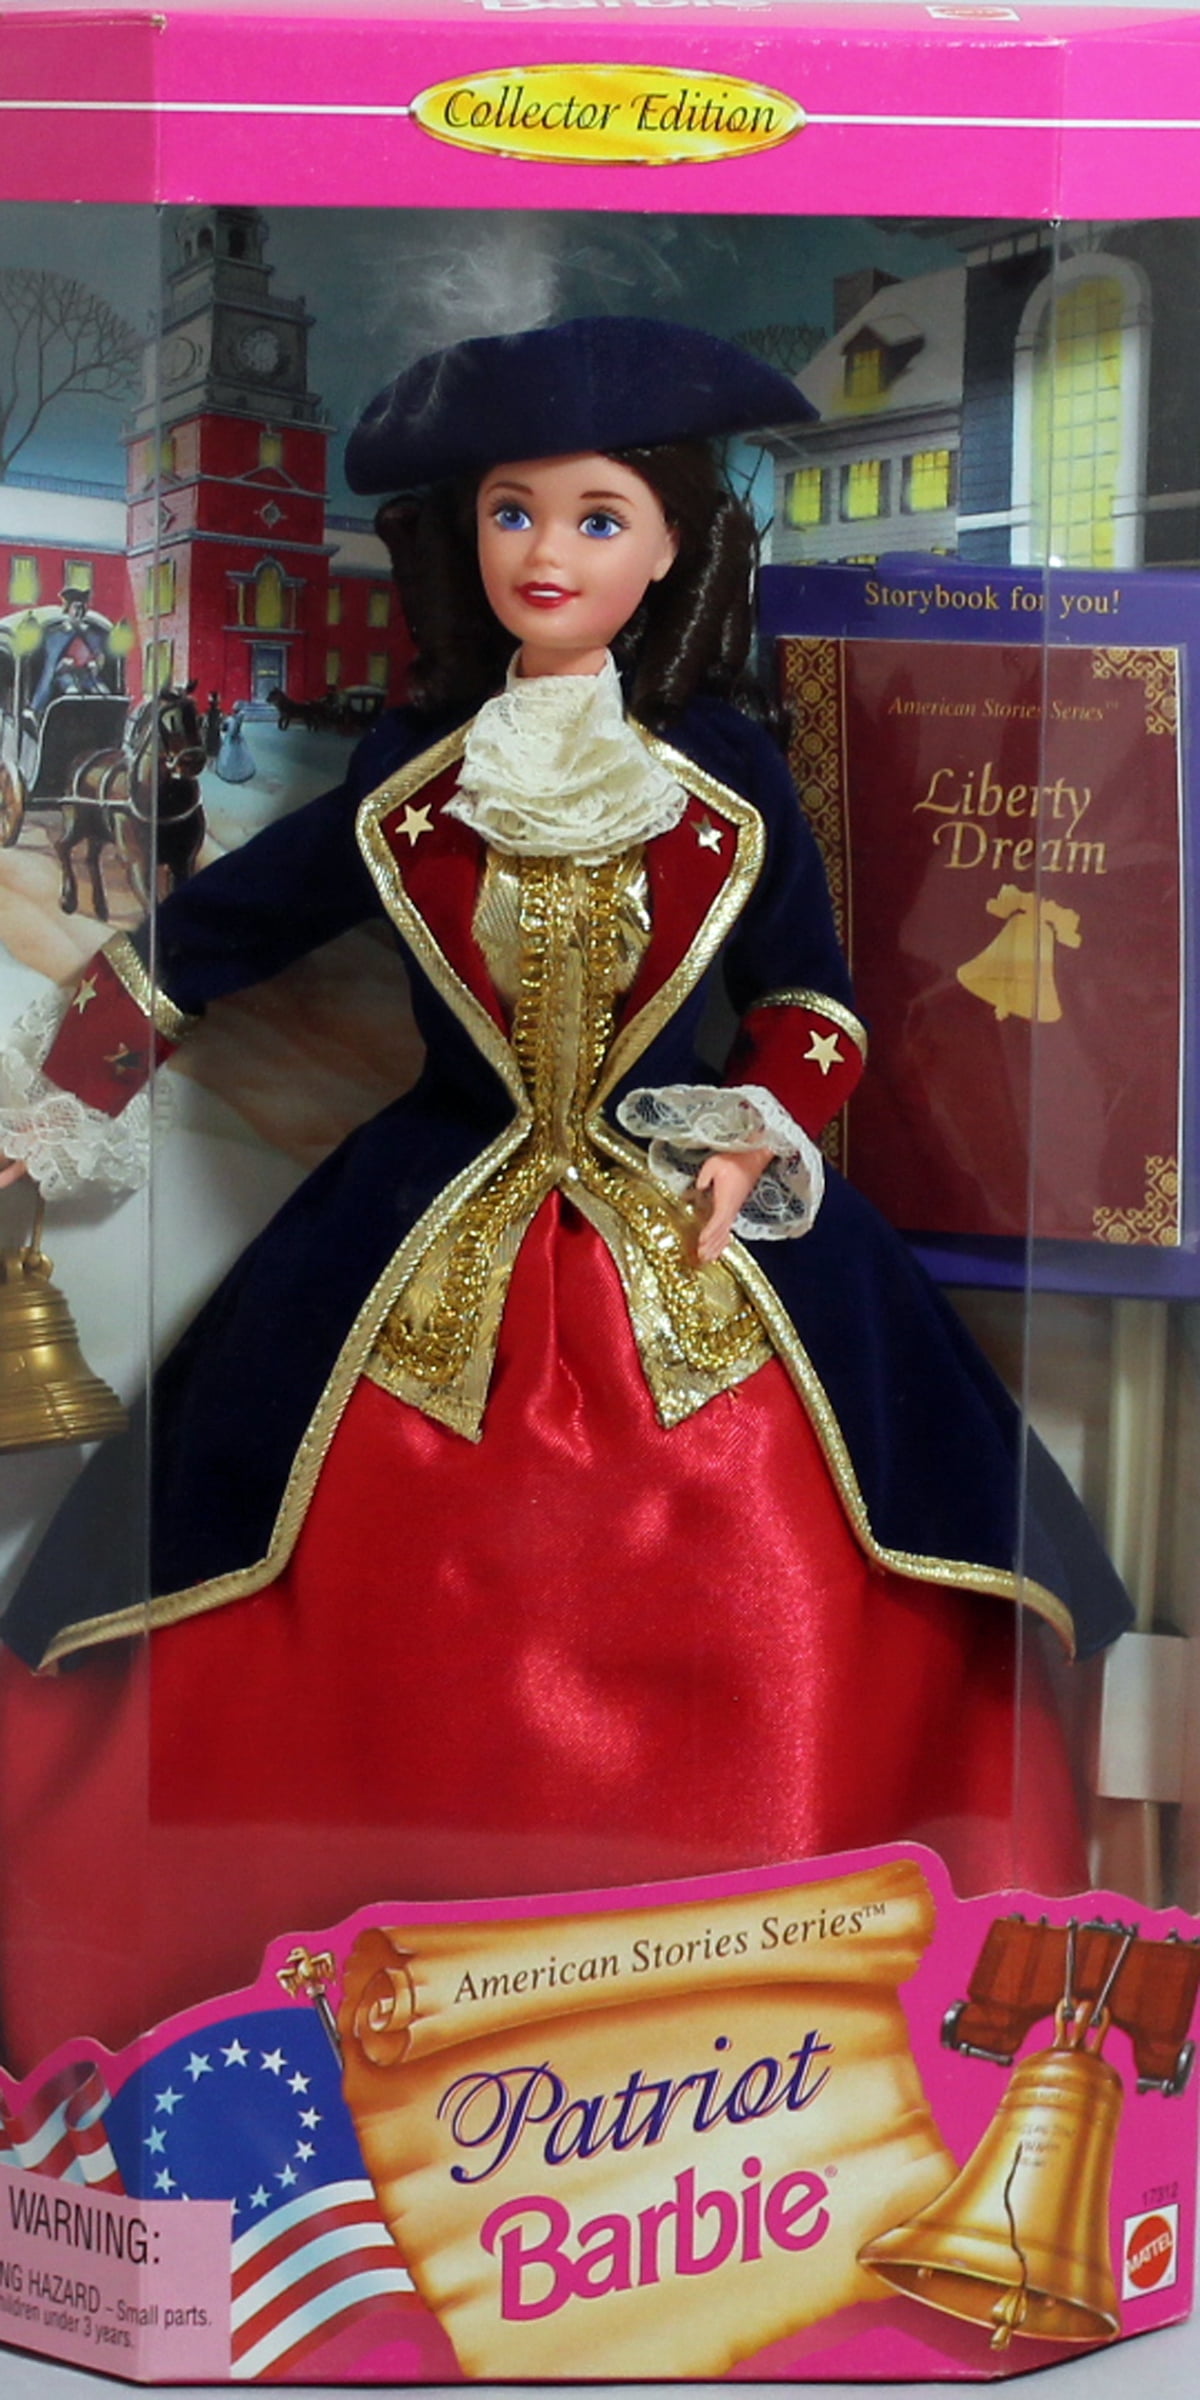 バービー Patriot Barbie - American Stories Series 輸入品並行輸入品